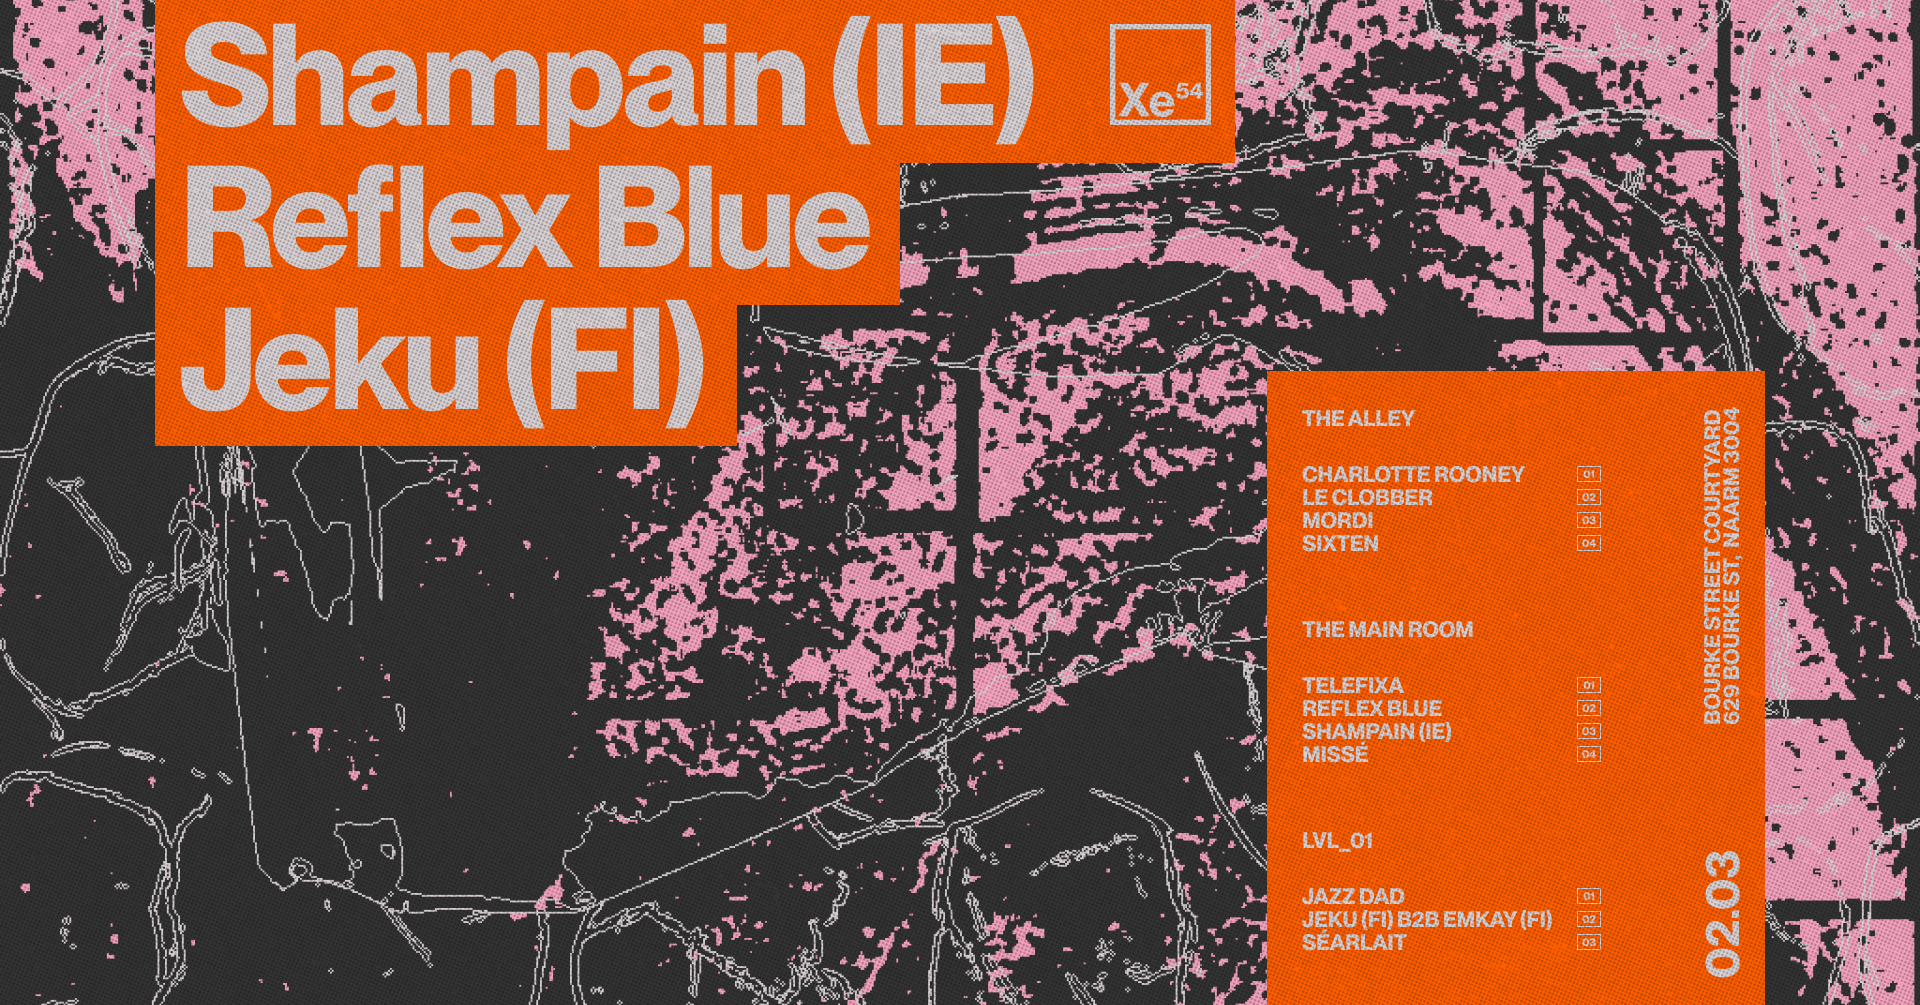 Xe54 ▬ Shampain (IE) + Reflex Blue + Jeku (FI) b2b emkay (FI) - Página frontal